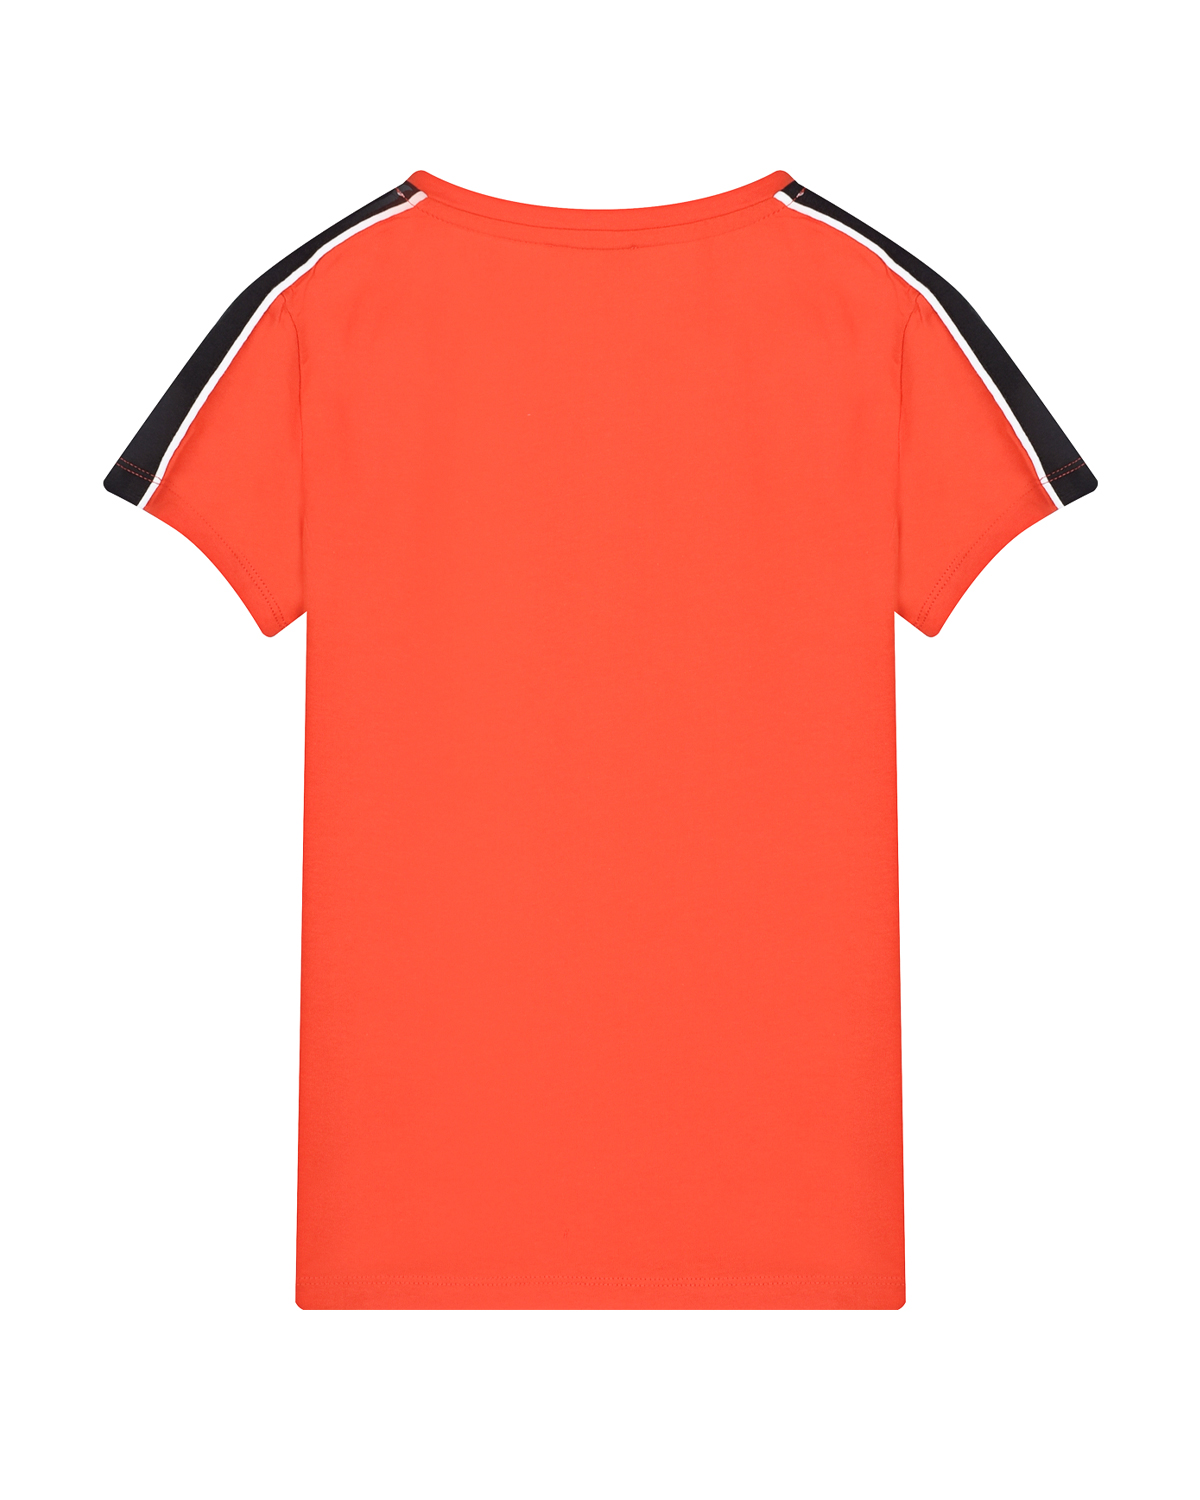 Оранжевая футболка с голубым принтом "sport" Bikkembergs детская, размер 116, цвет оранжевый - фото 2